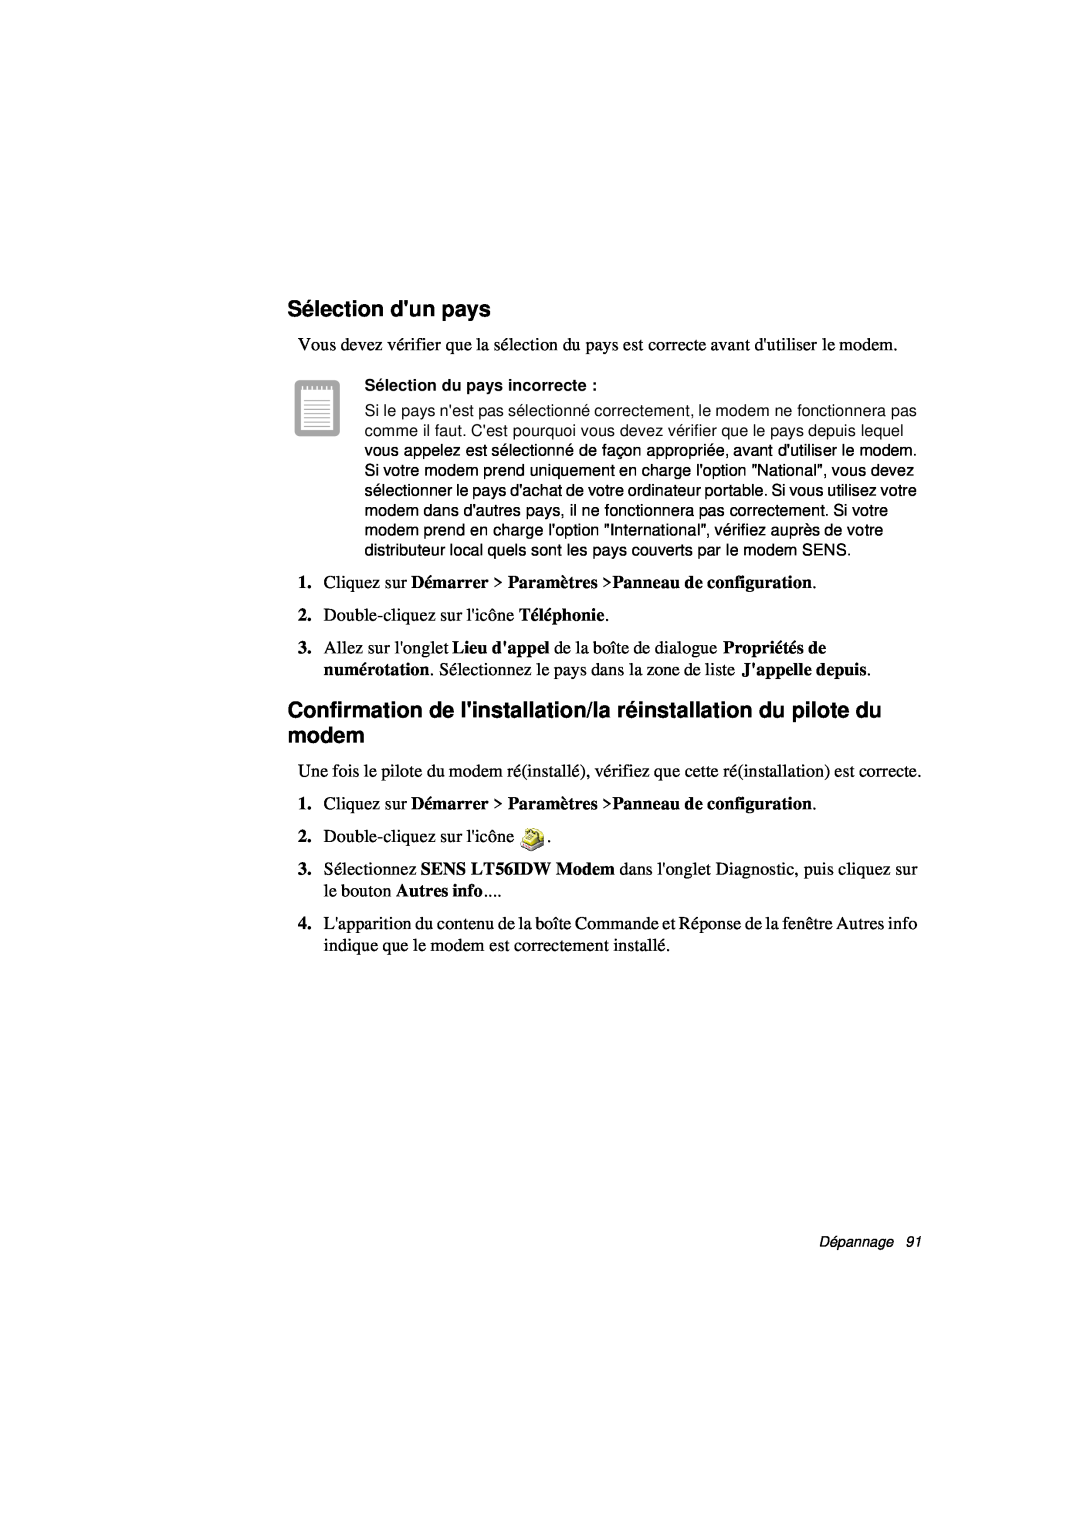 Samsung N760FN2022/SEF manual Sé lection dun pays, Confirmation de linstallation/la érinstallation du pilote du modem 